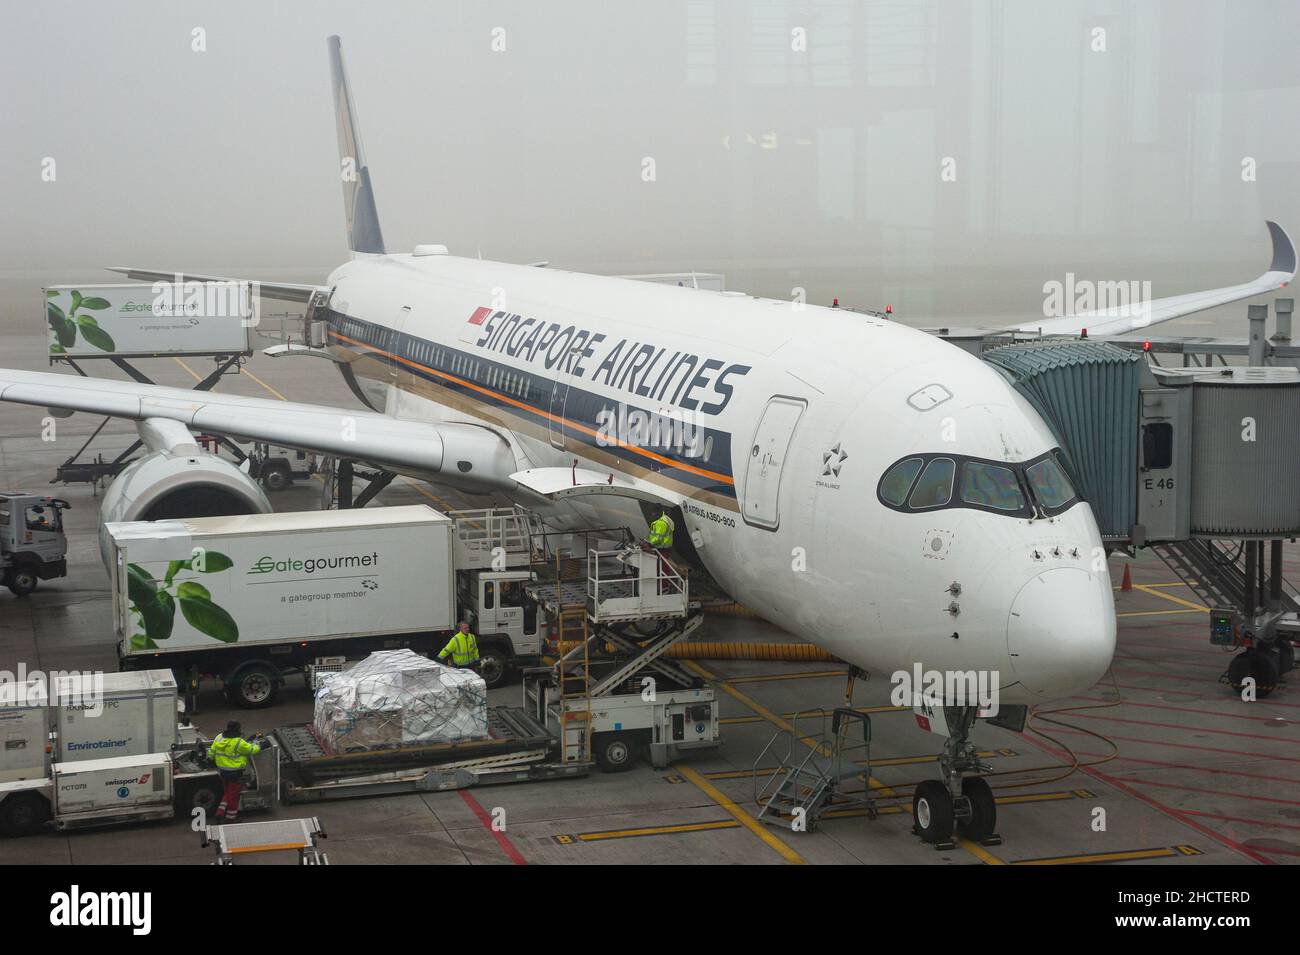 14.12.2021, Zürich, Schweiz, Europa - Singapore Airlines der Airbus A350 wird am Gate des Dock E Terminals am Flughafen Zürich geparkt. Stockfoto